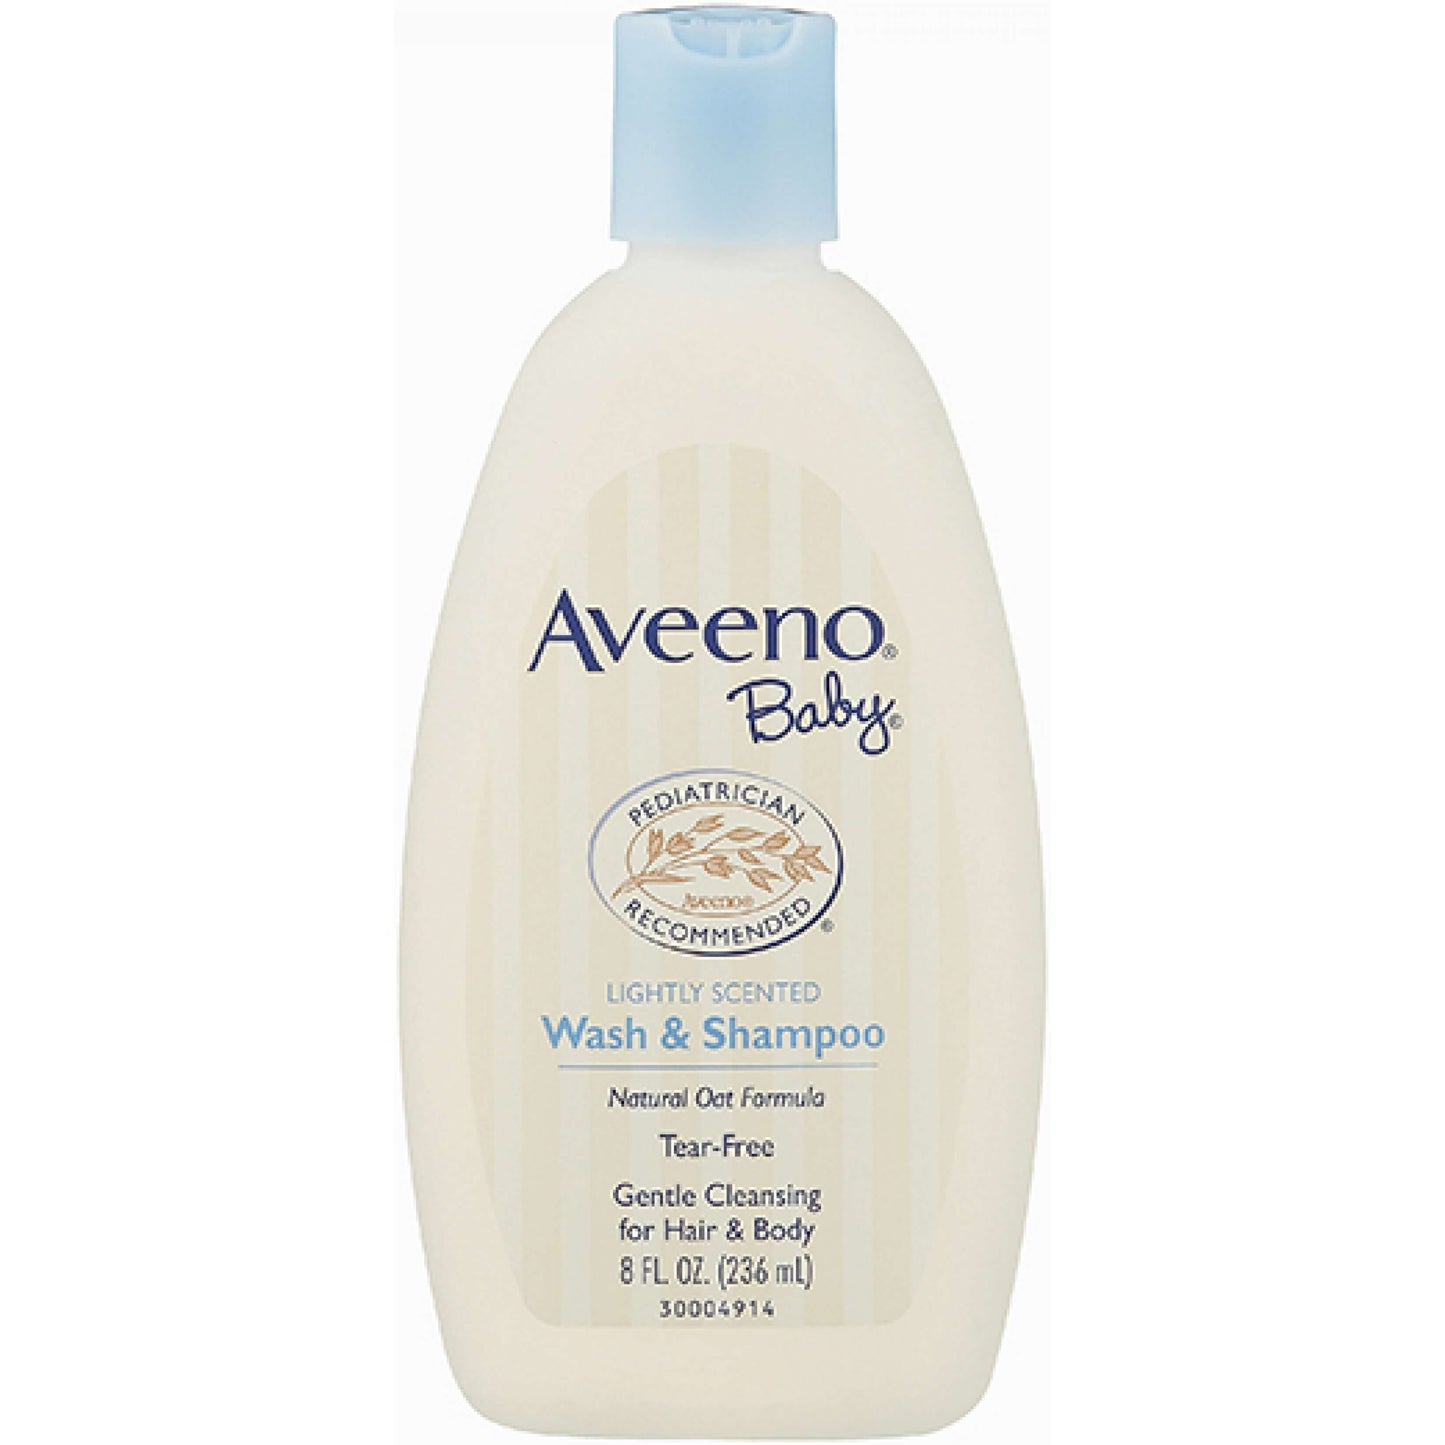 AVEENO Baby wash and Shampoo 236ml